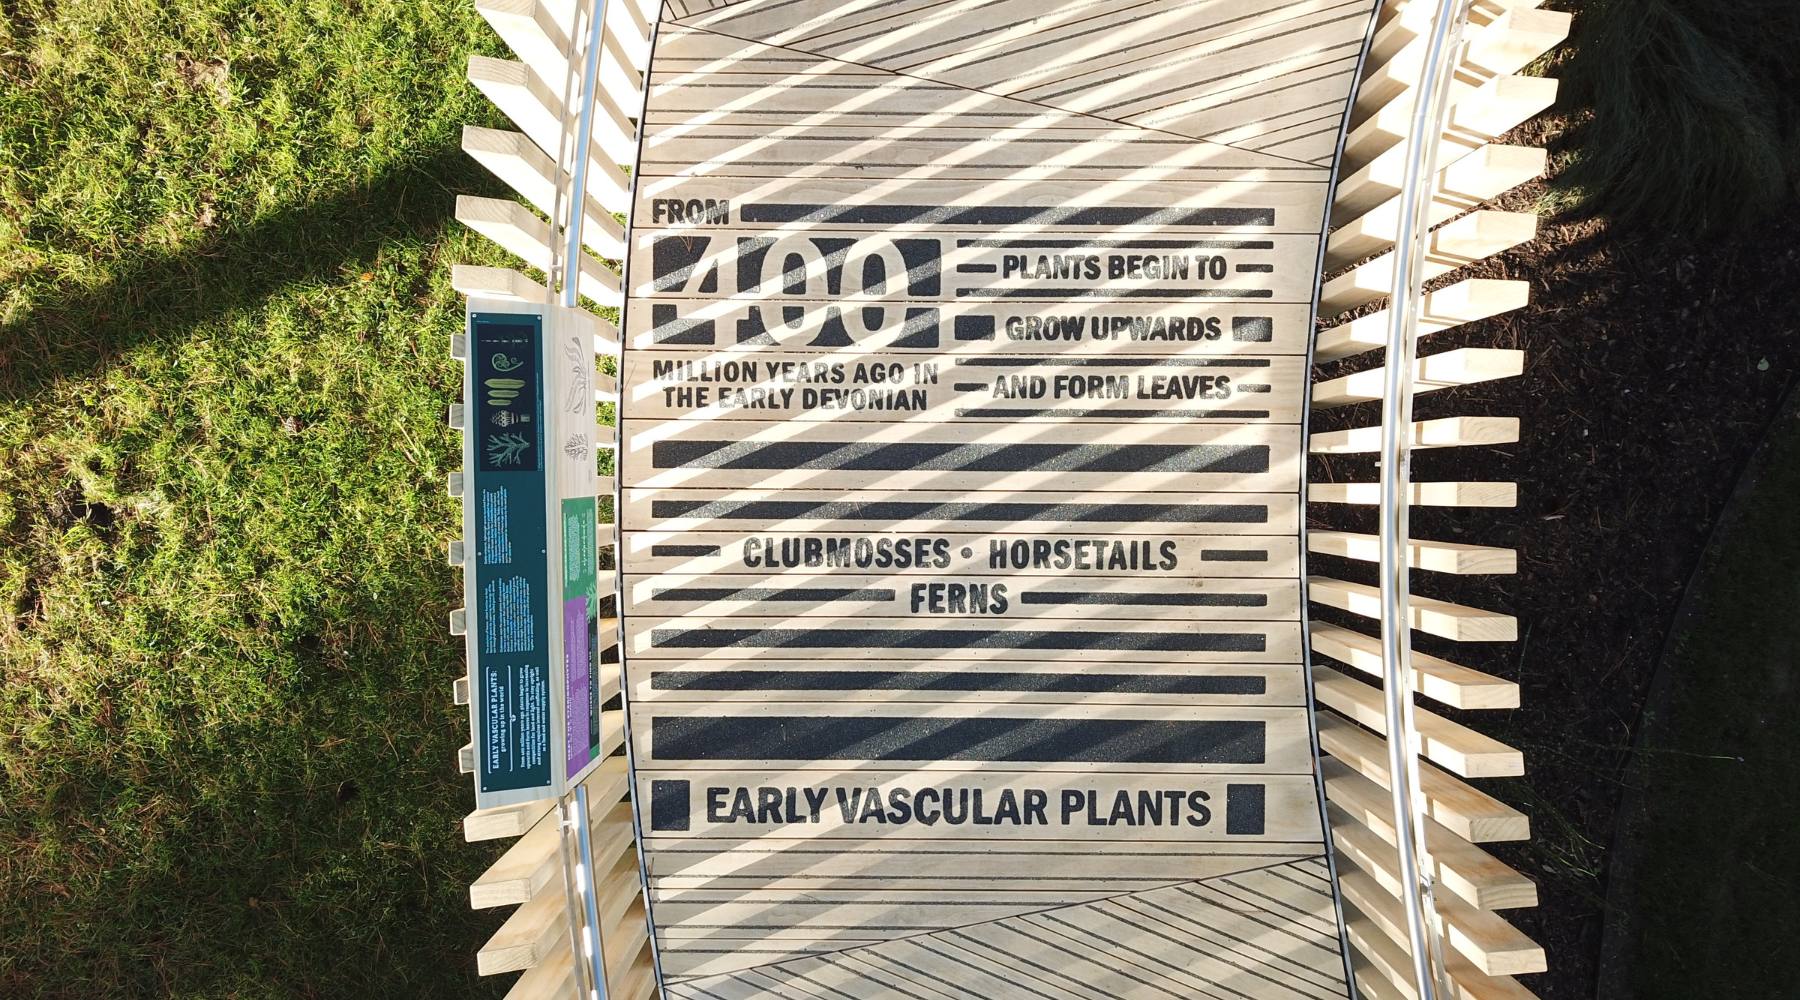 Machen Sie sich im Botanischen Garten der Universität Cambridge mit der Pflanzentaxonomie vertraut